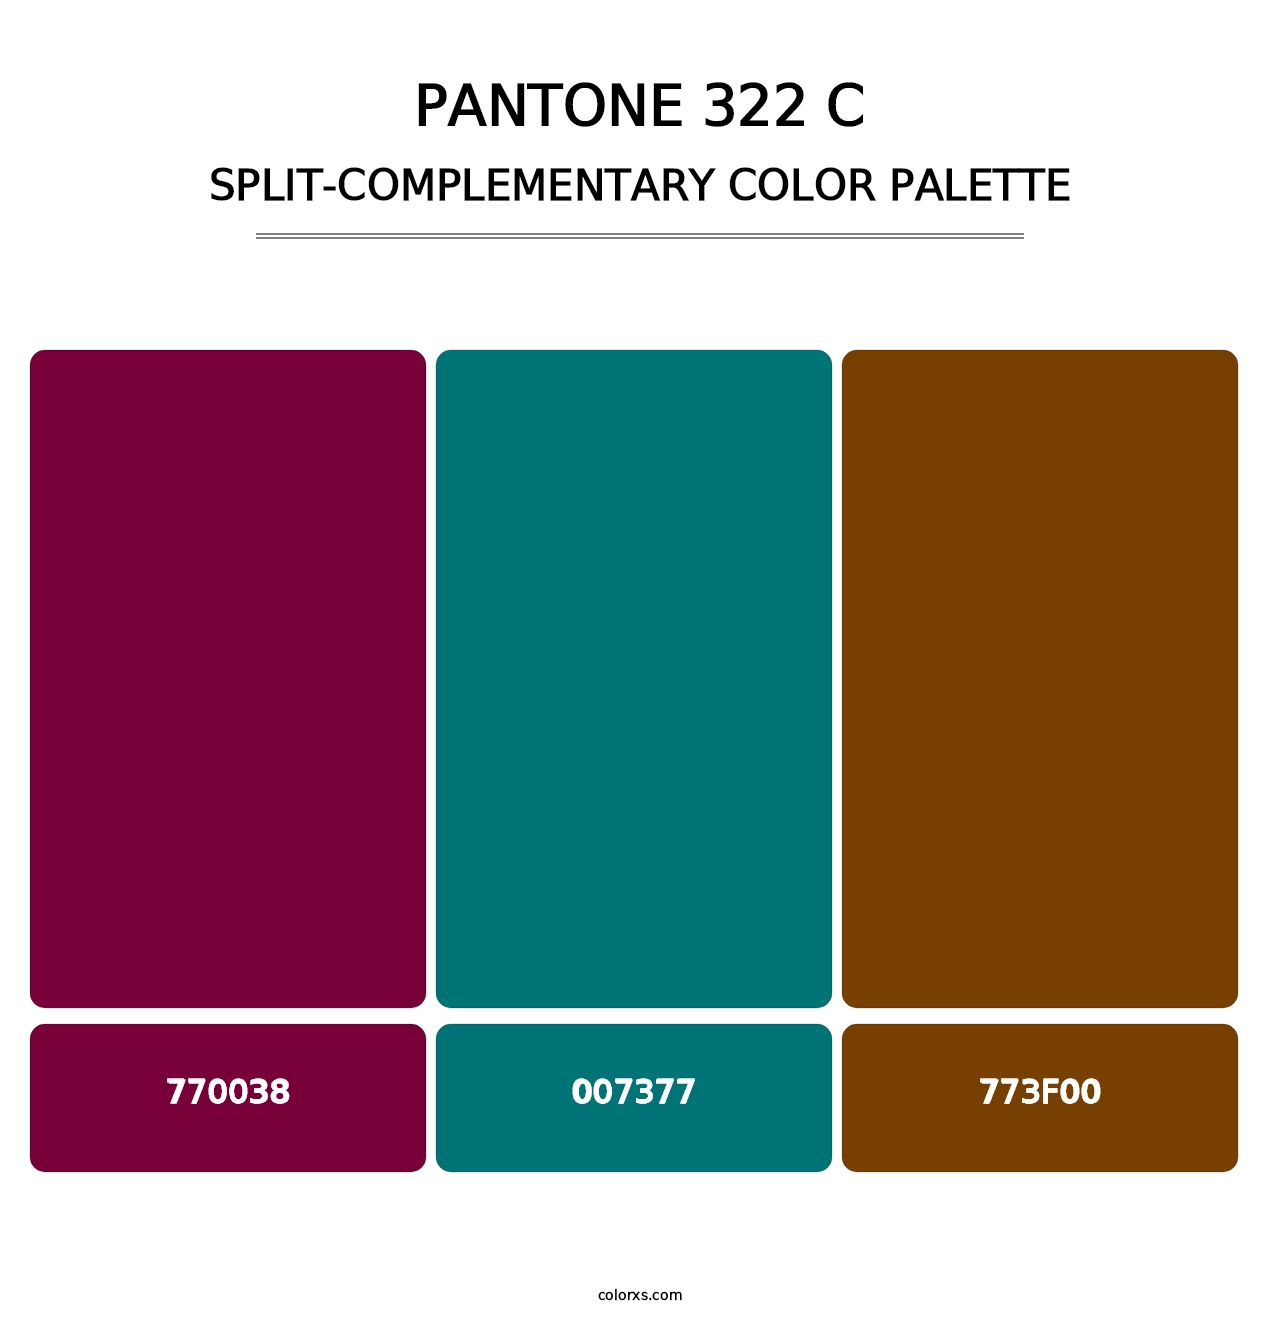 PANTONE 322 C - Split-Complementary Color Palette